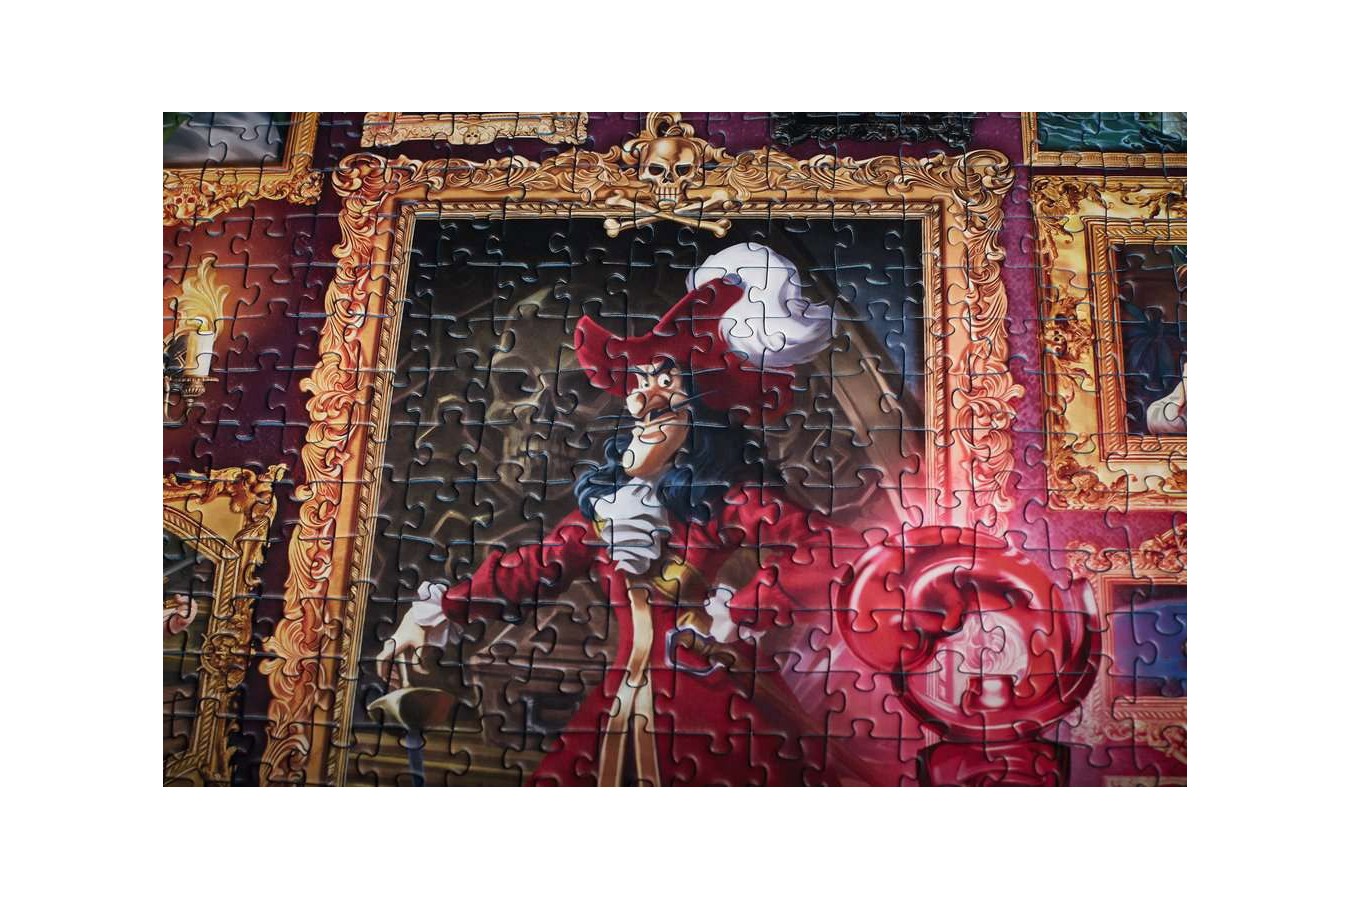 Puzzle Ravensburger - Disney Villainous, Captain Hook, 1000 piese (15022)